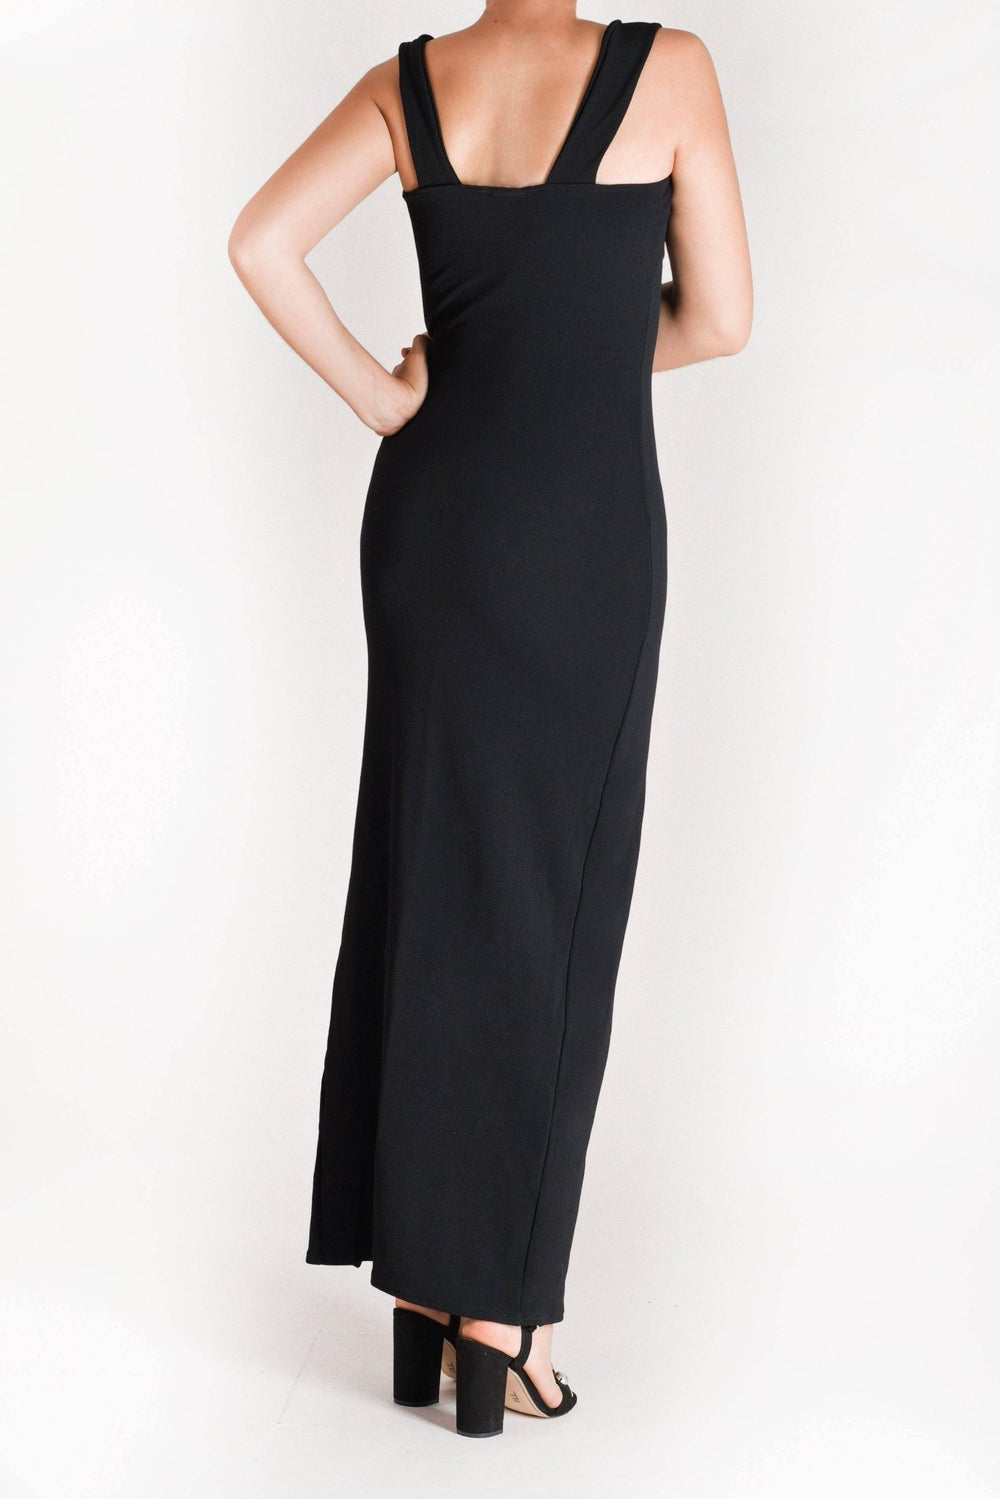 Clara - vestido largo negro - Lend the Trend renta de vestidos mexico